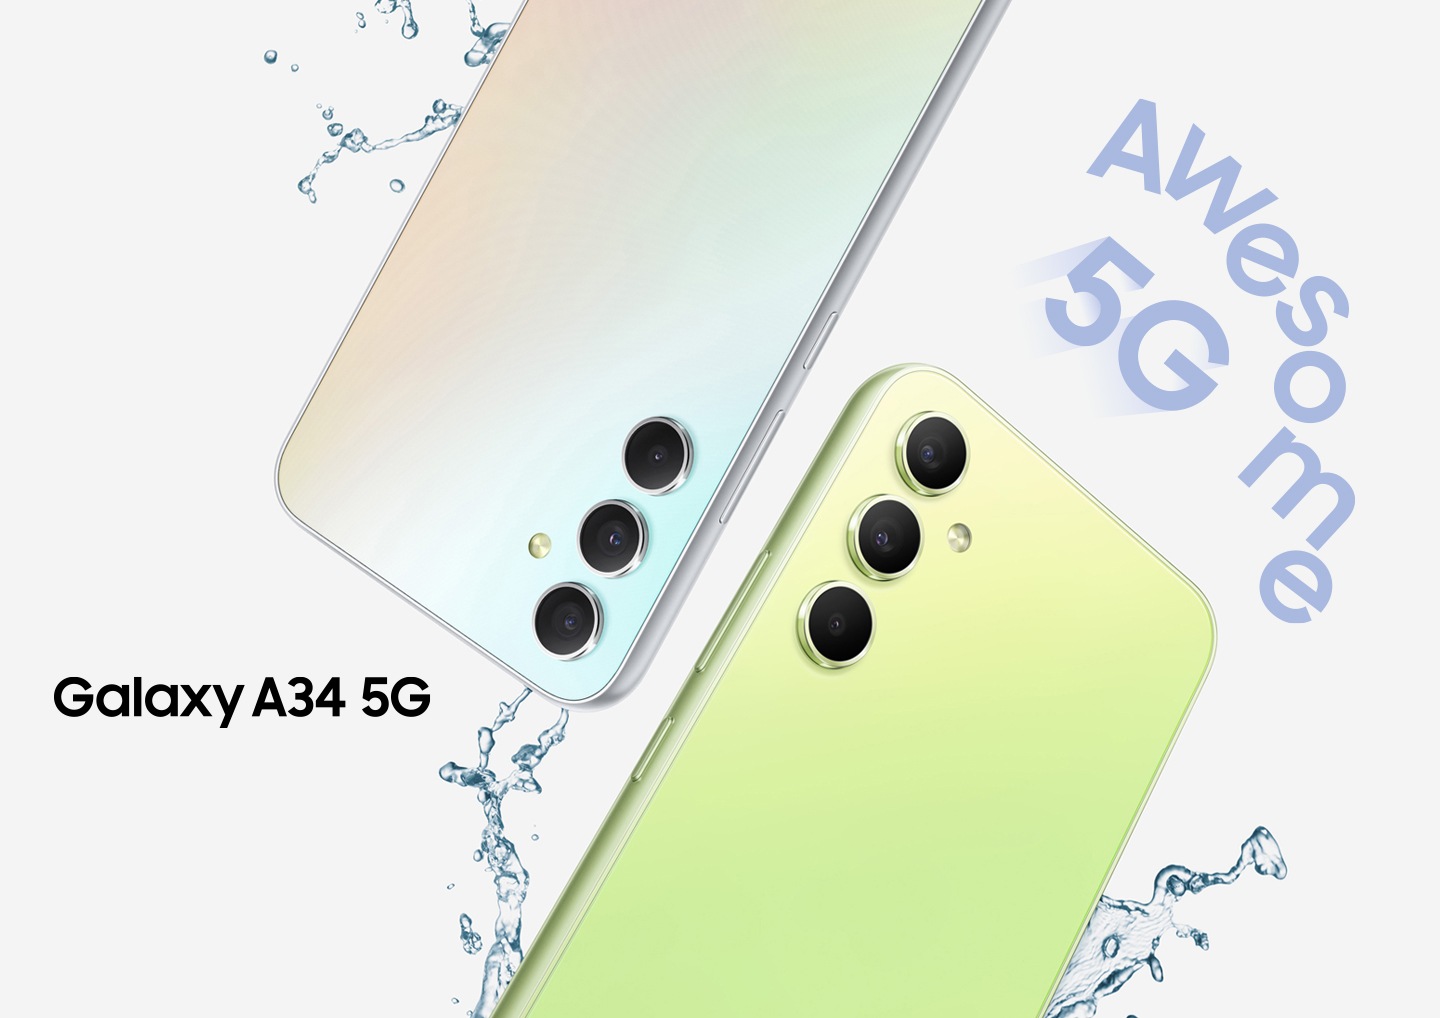 Deux Galaxy A34 5G montrent leurs moitiés supérieures de leurs fesses, l'une en Awesome Violet et l'autre en Awesome Lime. Des gouttelettes d'eau éclaboussent autour des appareils "Awesome 5G“.